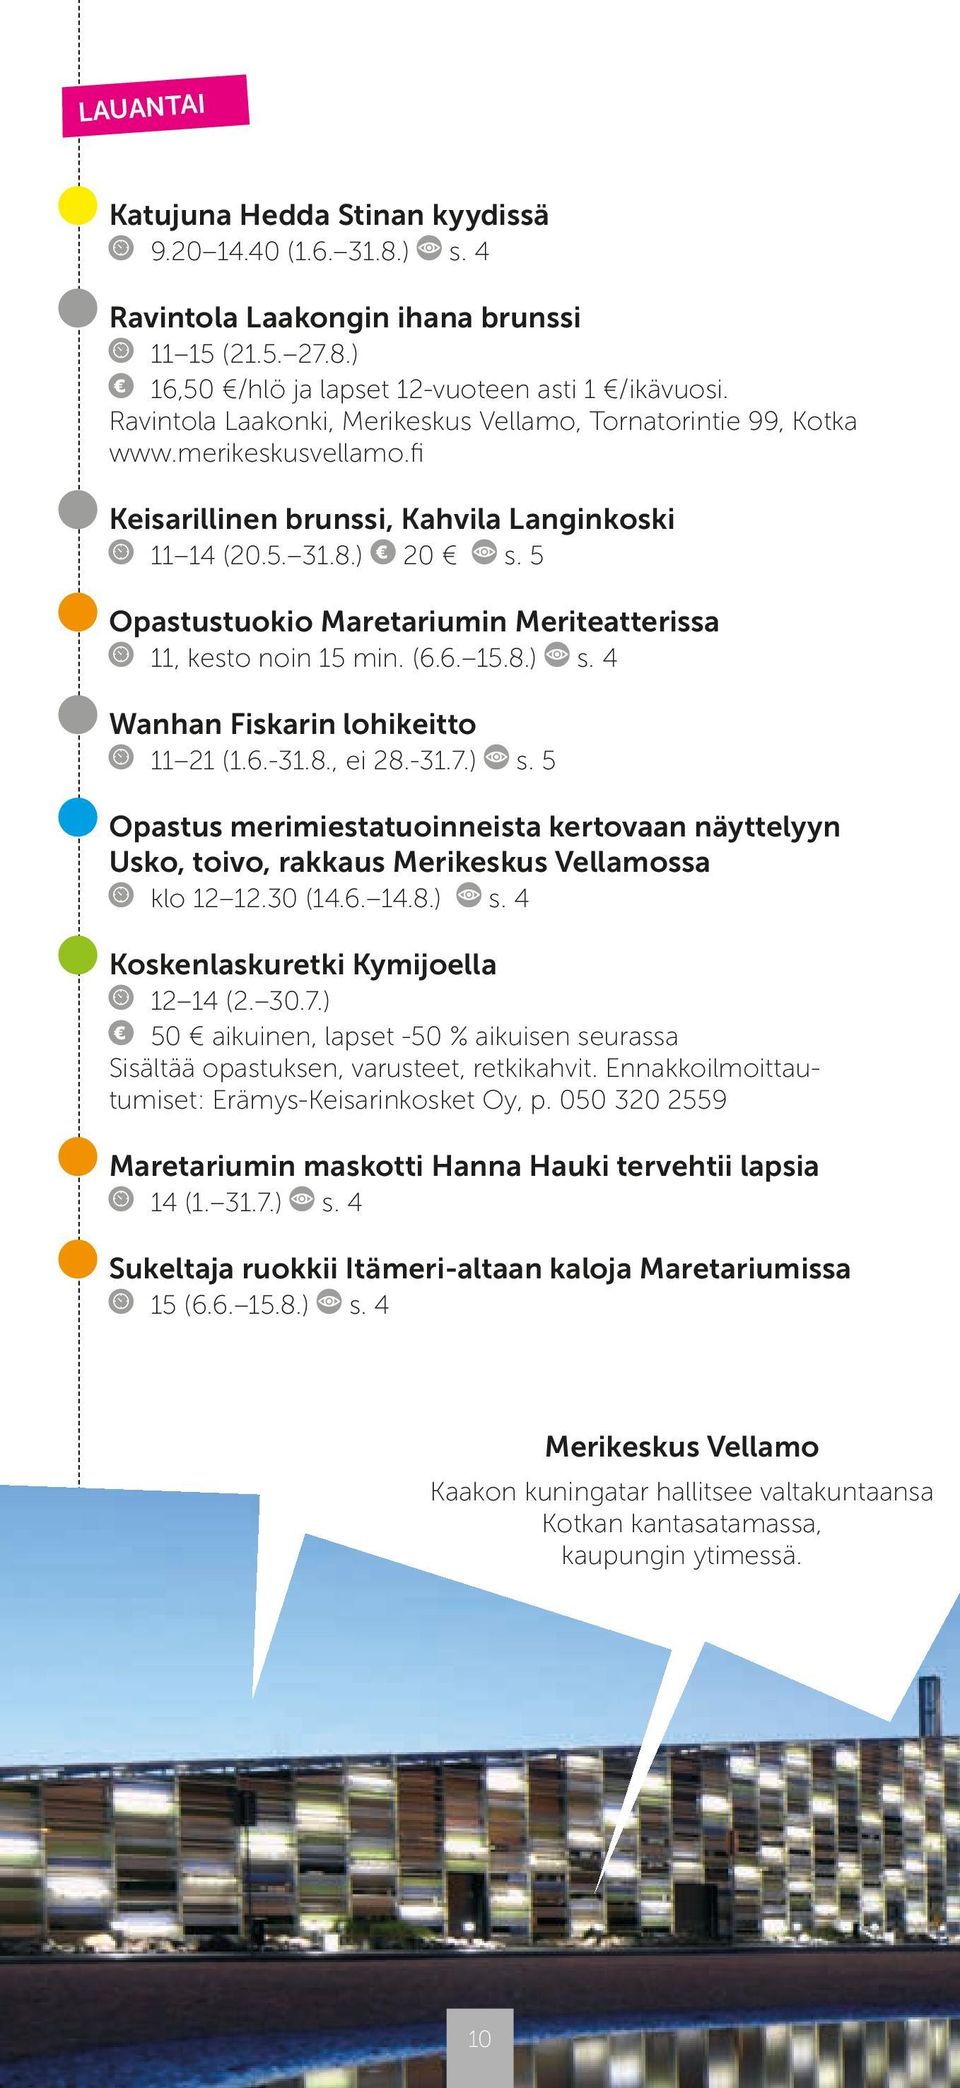 5 Opastustuokio Maretariumin Meriteatterissa 11, kesto noin 15 min. (6.6. 15.8.) s. 4 Wanhan Fiskarin lohikeitto 11 21 (1.6.-31.8., ei 28.-31.7.) s. 5 Opastus merimiestatuoinneista kertovaan näyttelyyn Usko, toivo, rakkaus Merikeskus Vellamossa klo 12 12.